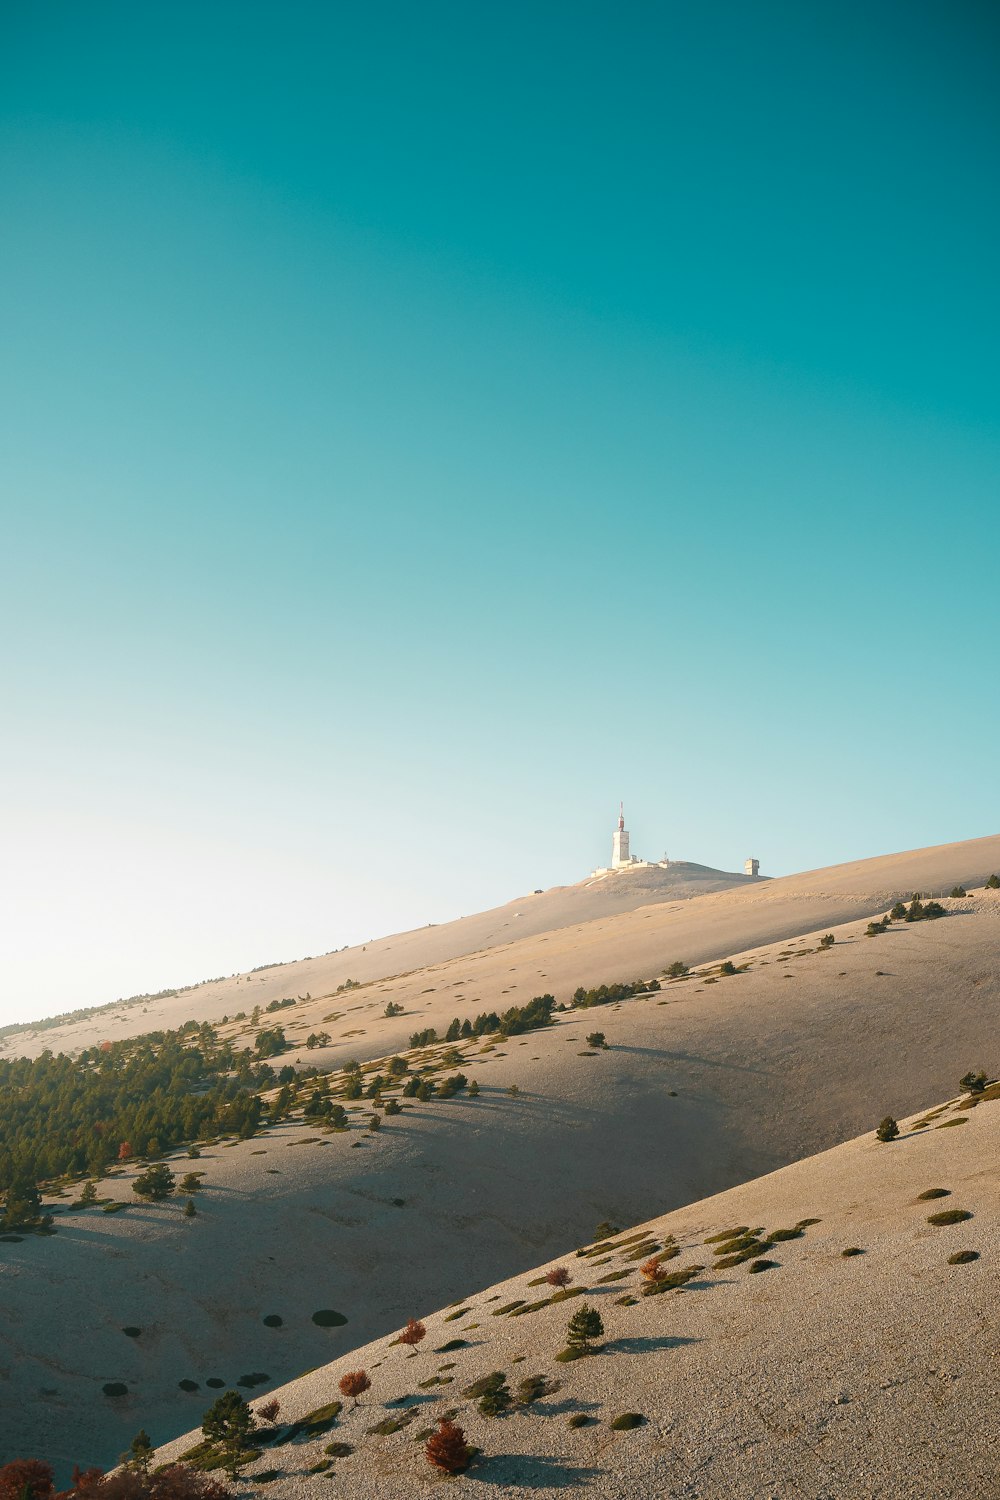 Un faro blanco en la cima de una colina en el desierto